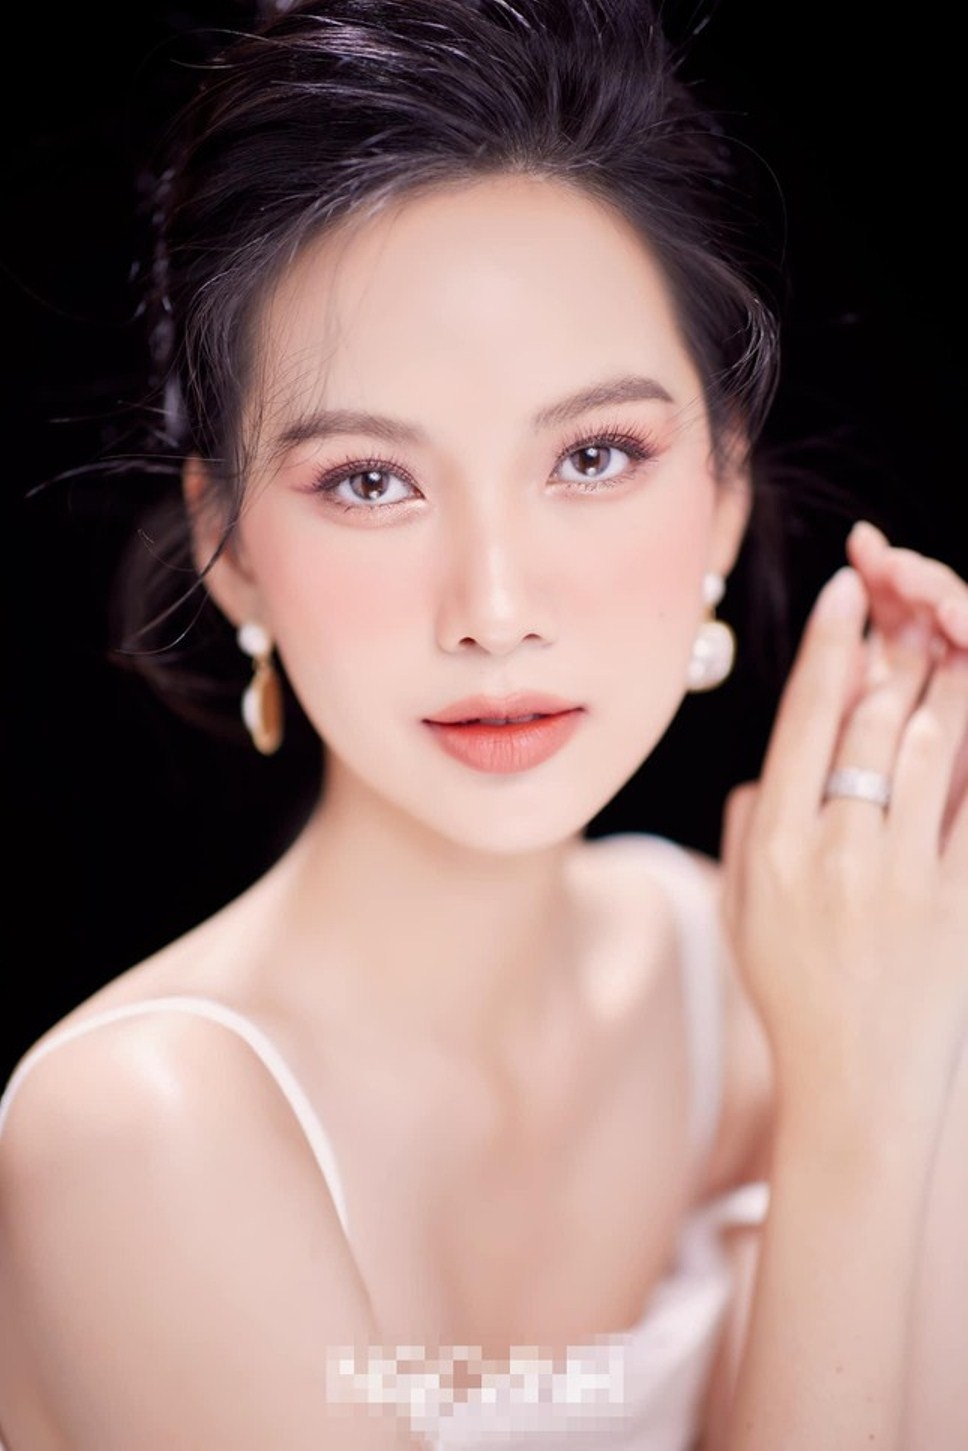 Top 5 Hoa hậu Việt Nam Phương Quỳnh tiết lộ bí quyết để có làn da trắng sứ